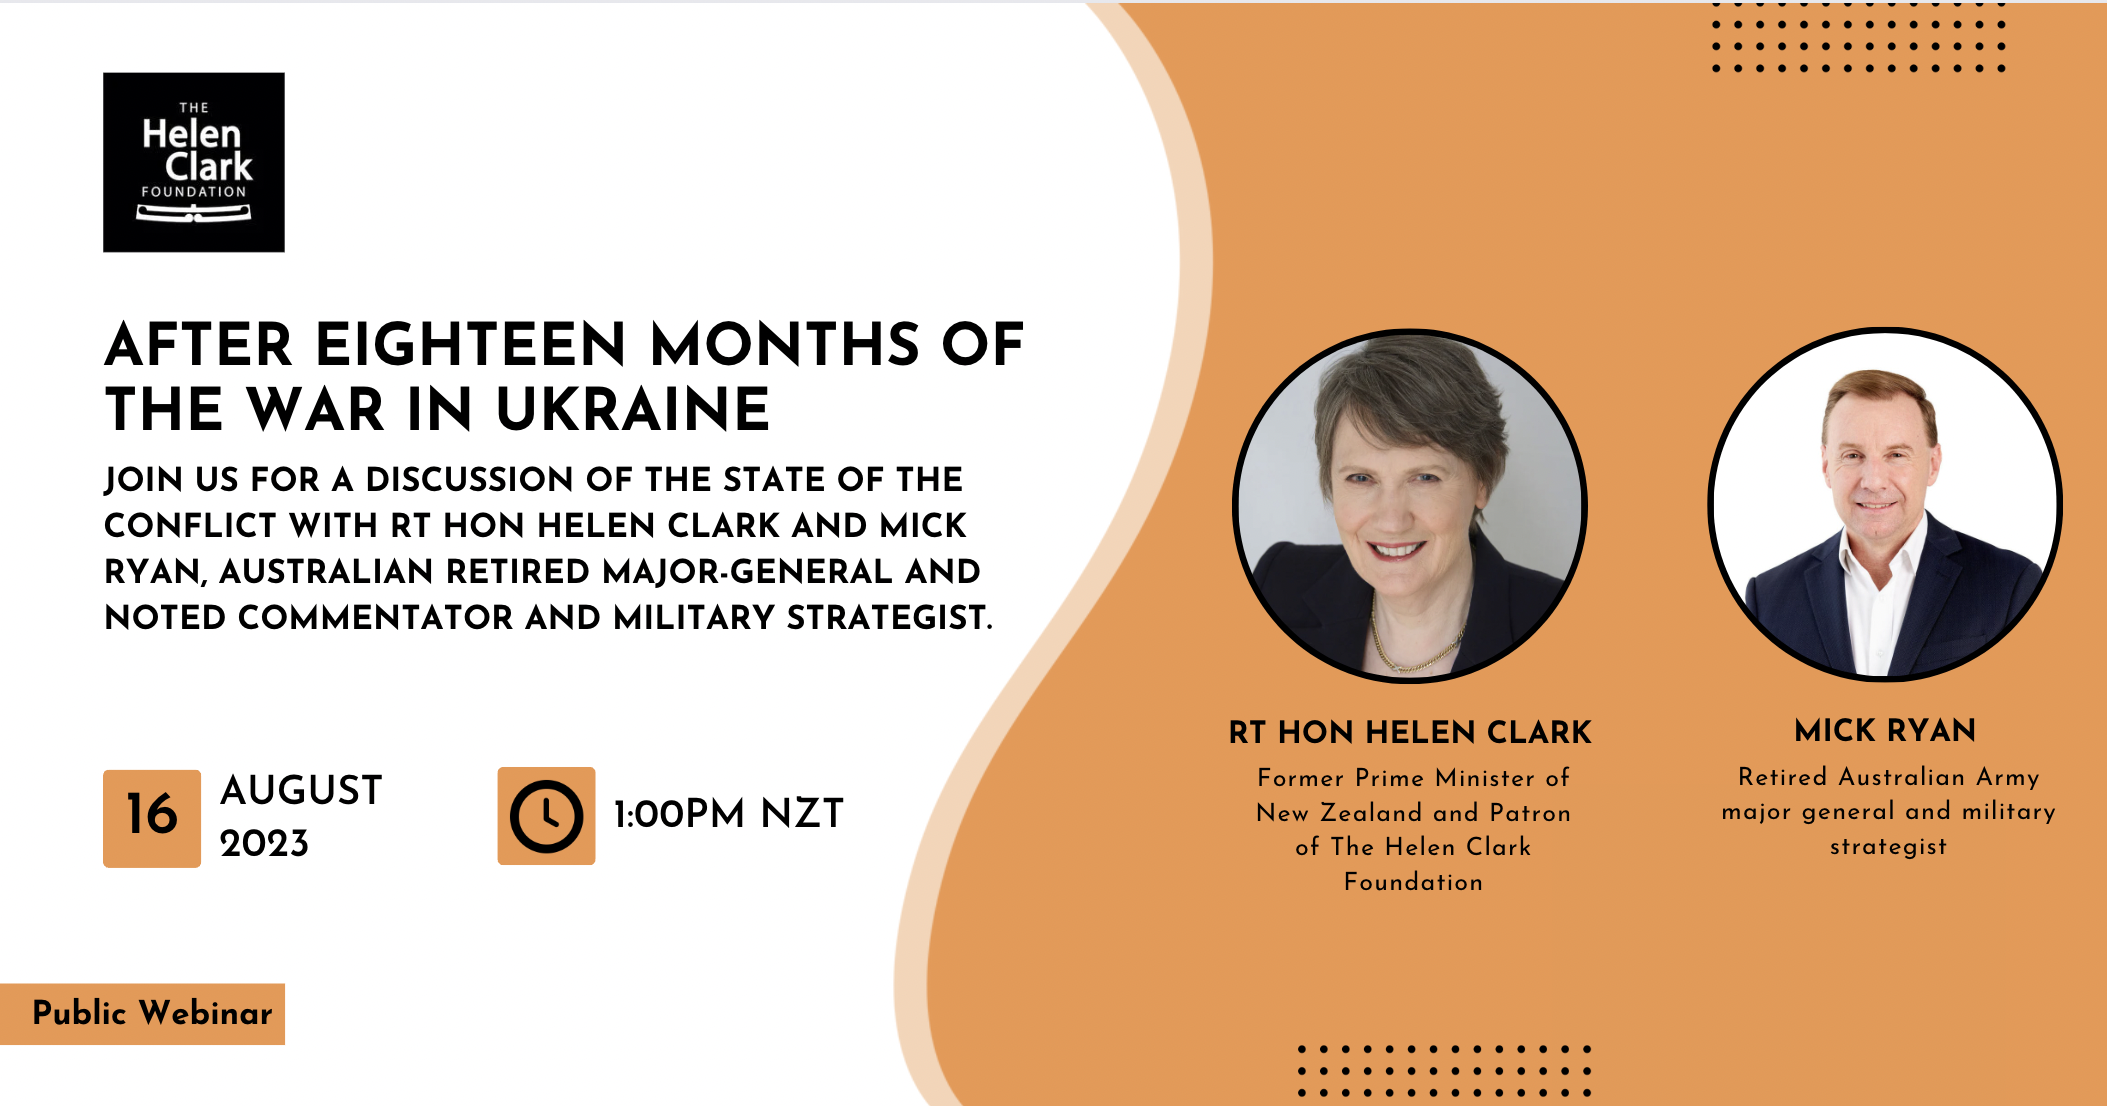 After Eighteen Months of the War in Ukraine webinar with Helen Clark and Mick Ryan